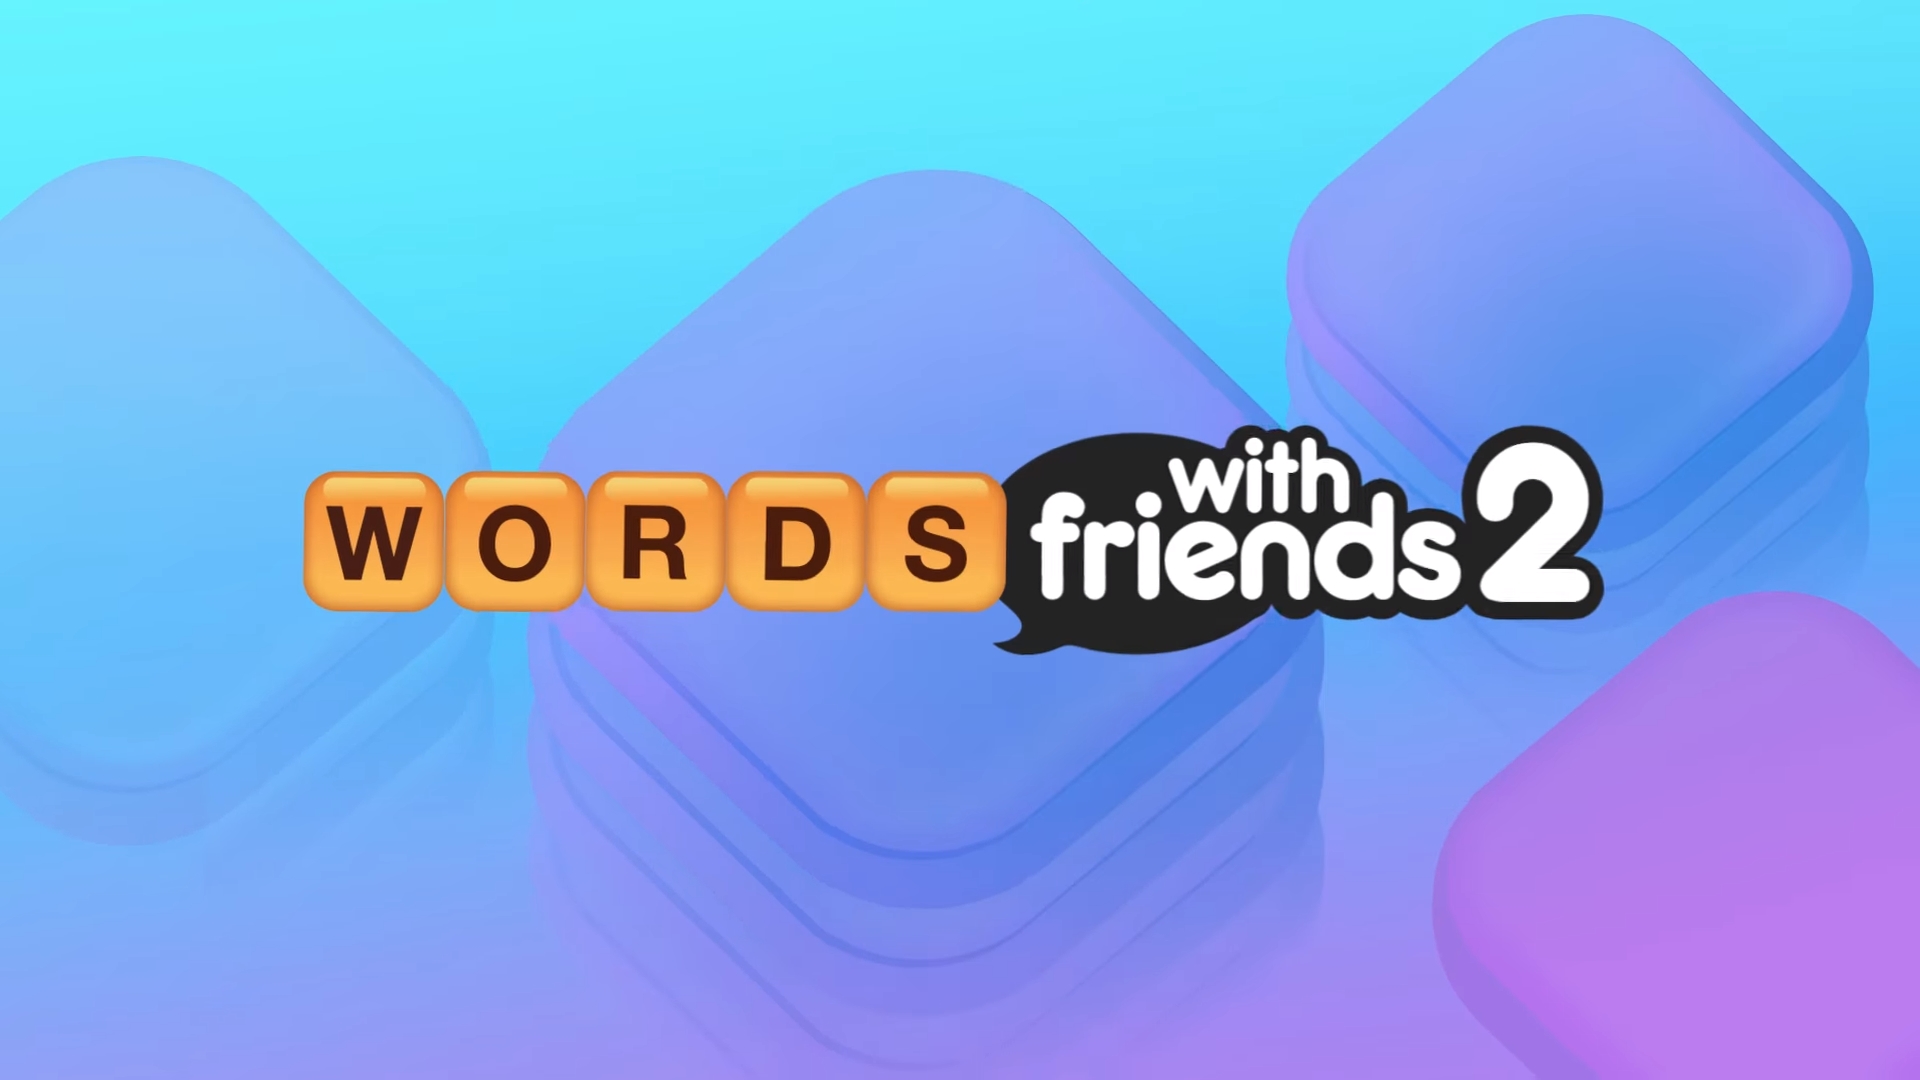 Words with friends. Words with friends 2. Words with friends 2 Word game. Friends 2 казино.